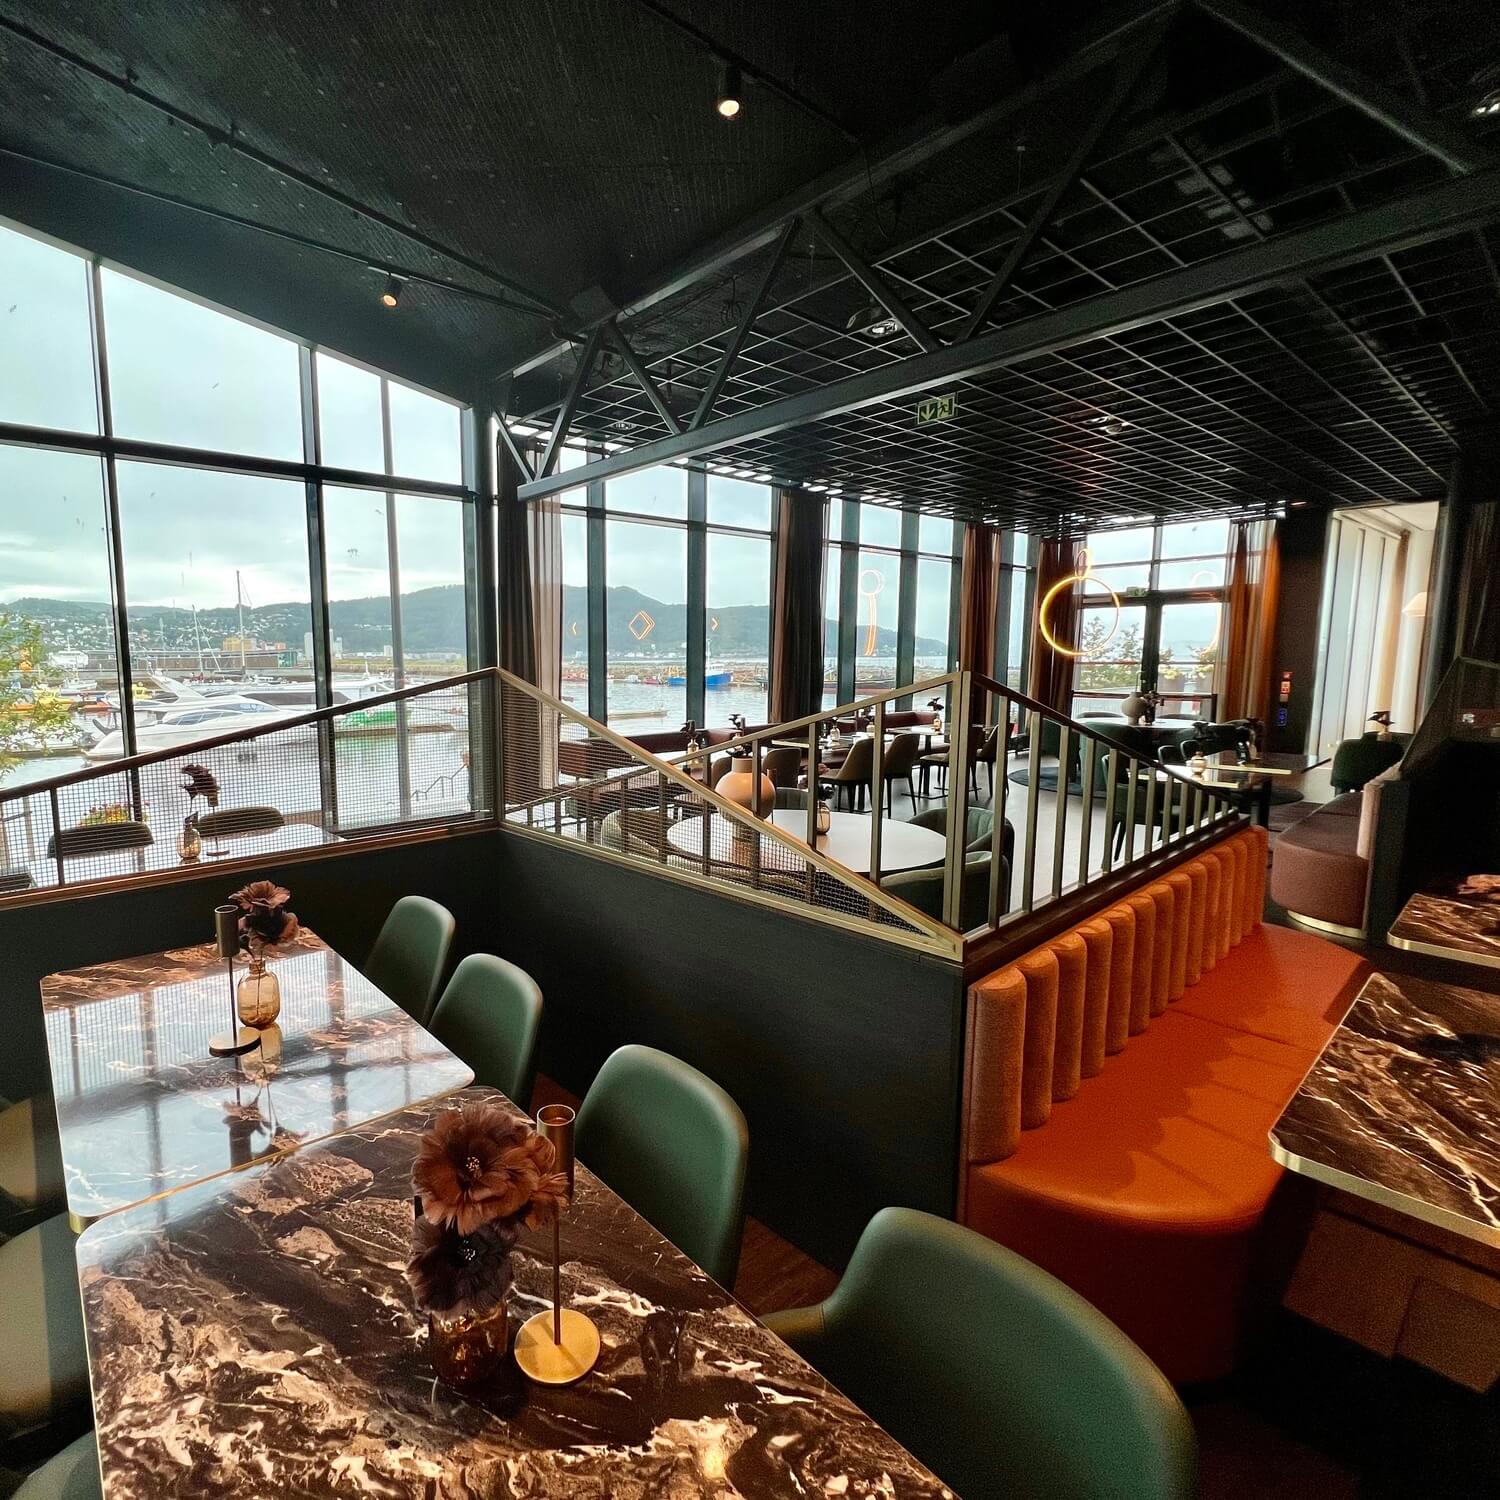 Modern interior in the restaurant at Clarion Hotel Trondheim.